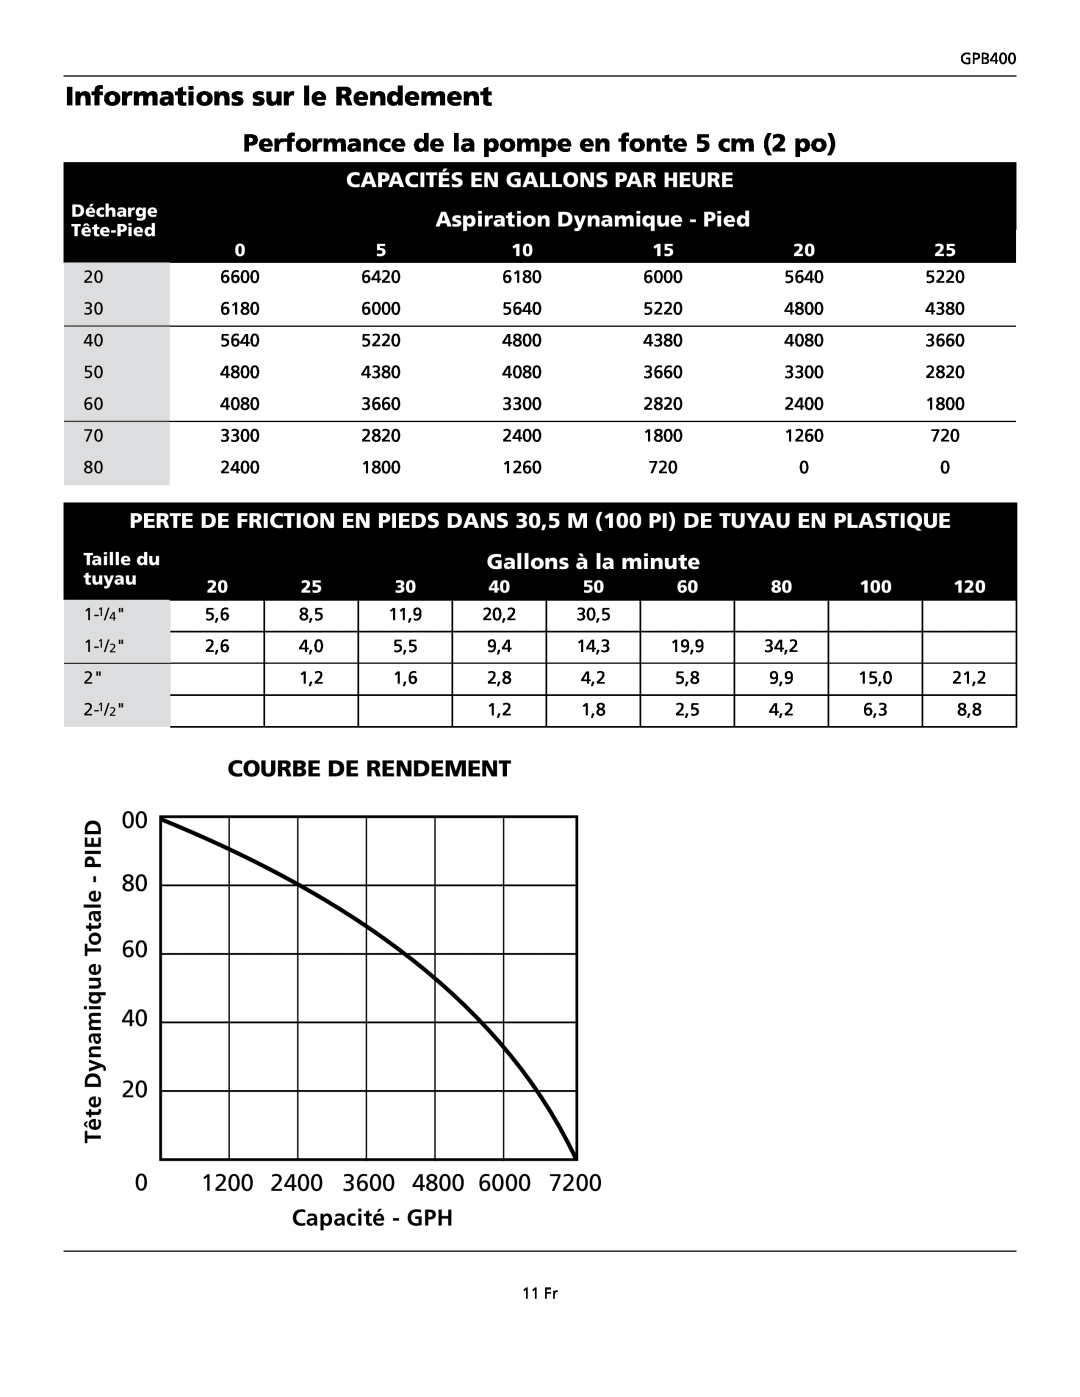 Wayne GPB400 Informations sur le Rendement, Performance de la pompe en fonte 5 cm 2 po, Courbeperformancede Rendementcurve 